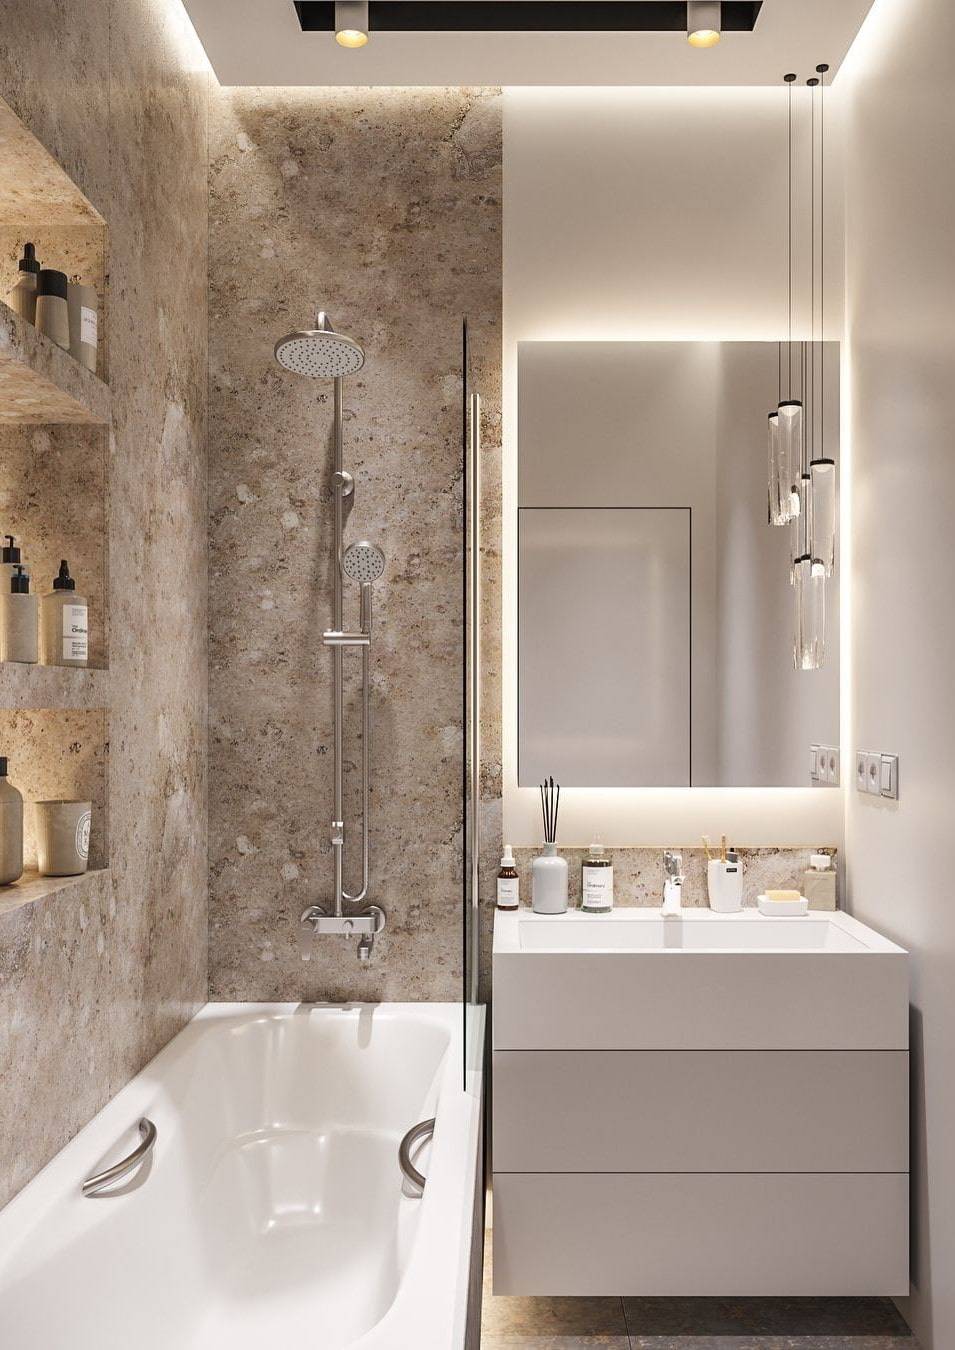 Дизайн совмещенного санузла 6 кв. м (77 фото): оформление интерьера ванной комнаты с туалетом, планировка санузла 2 на 3 метра